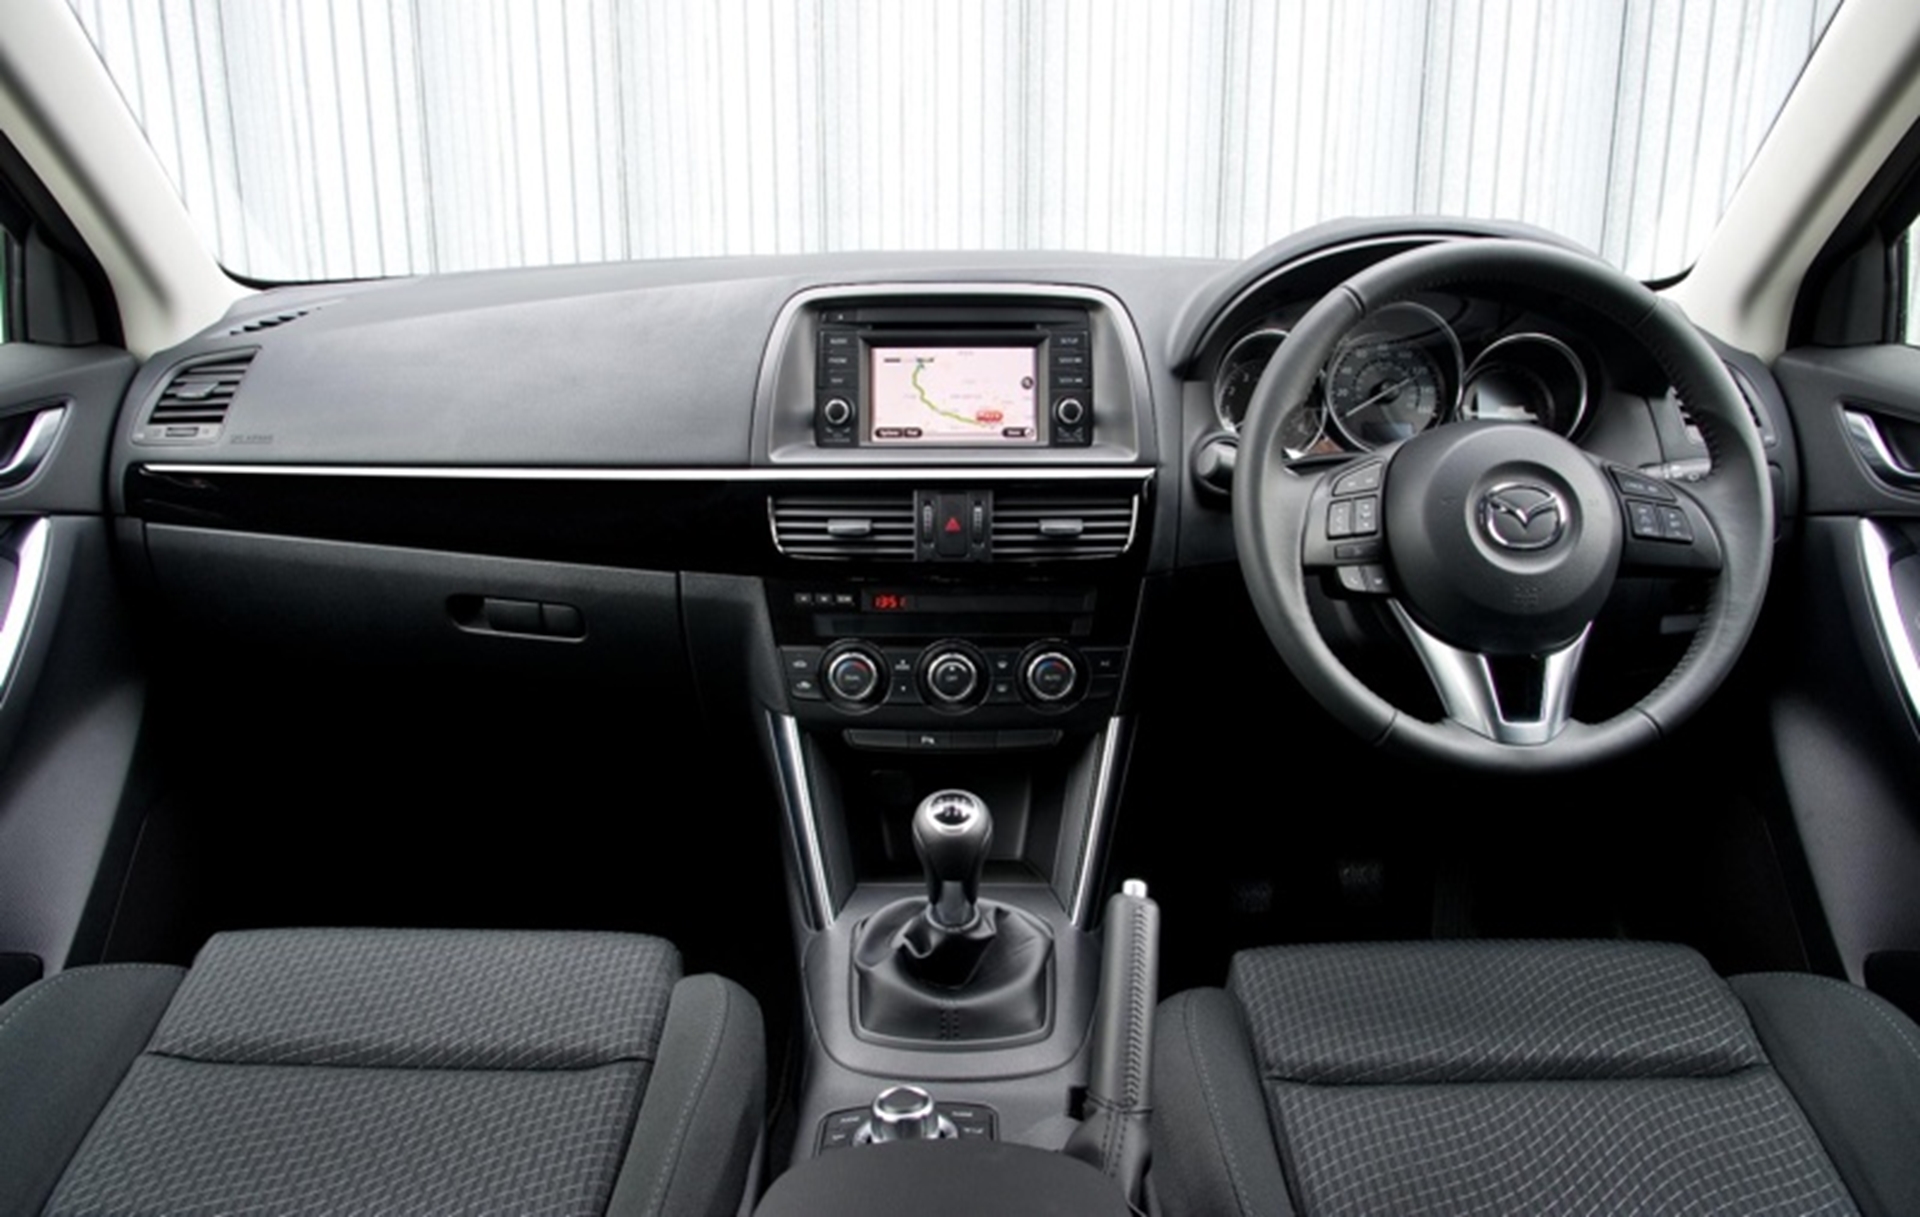 Mazda CX-5 Interior